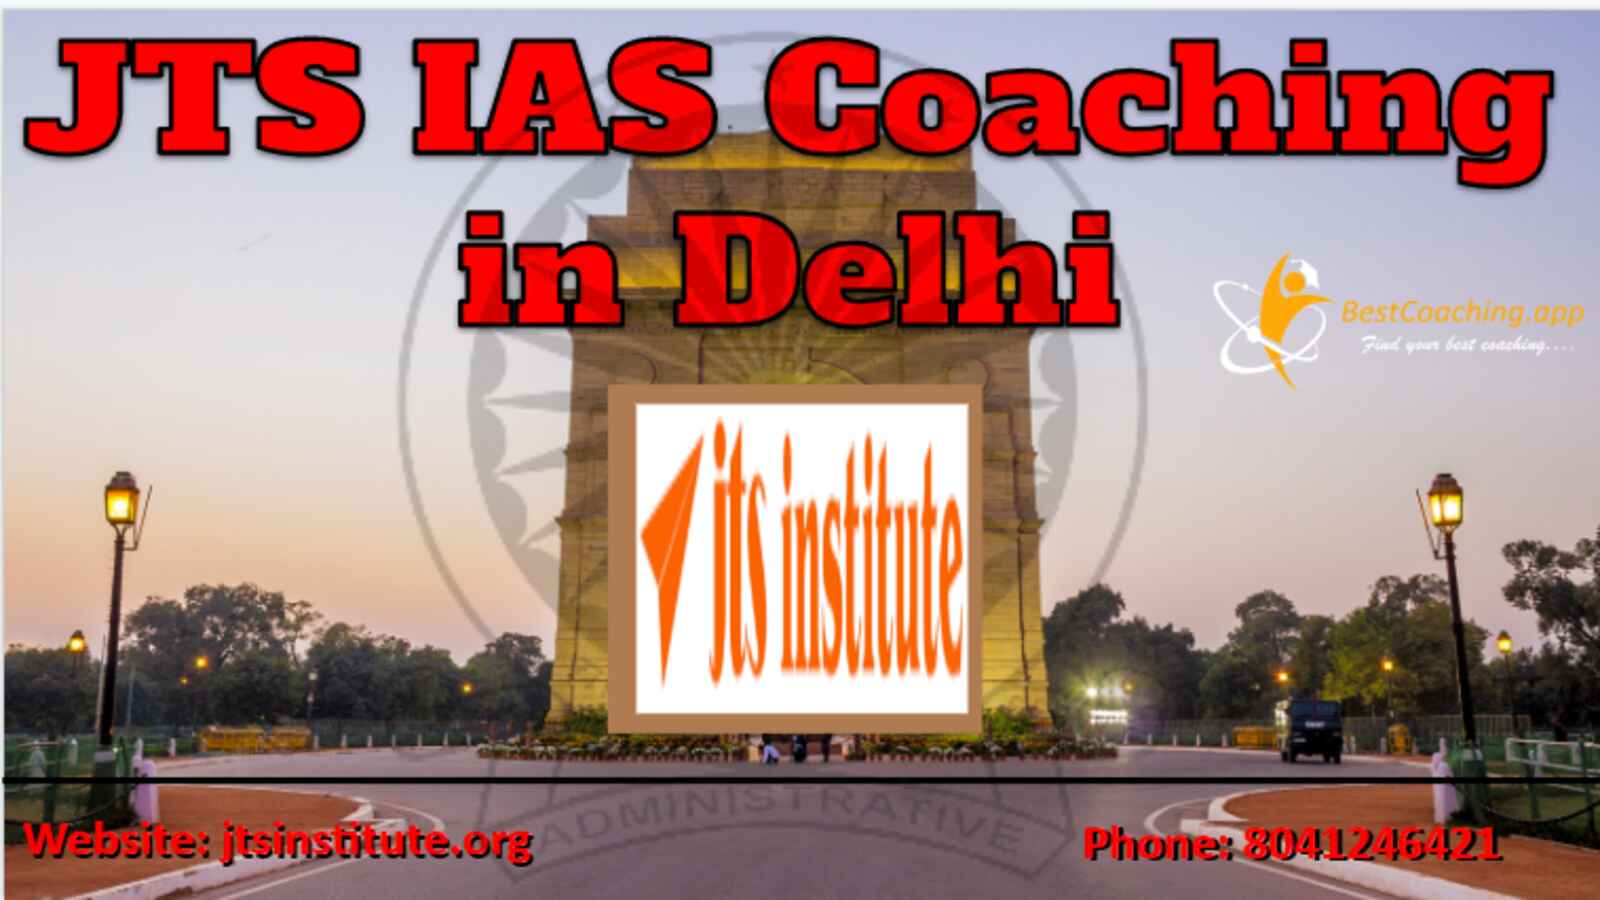 JTS IAS Coaching Delhi